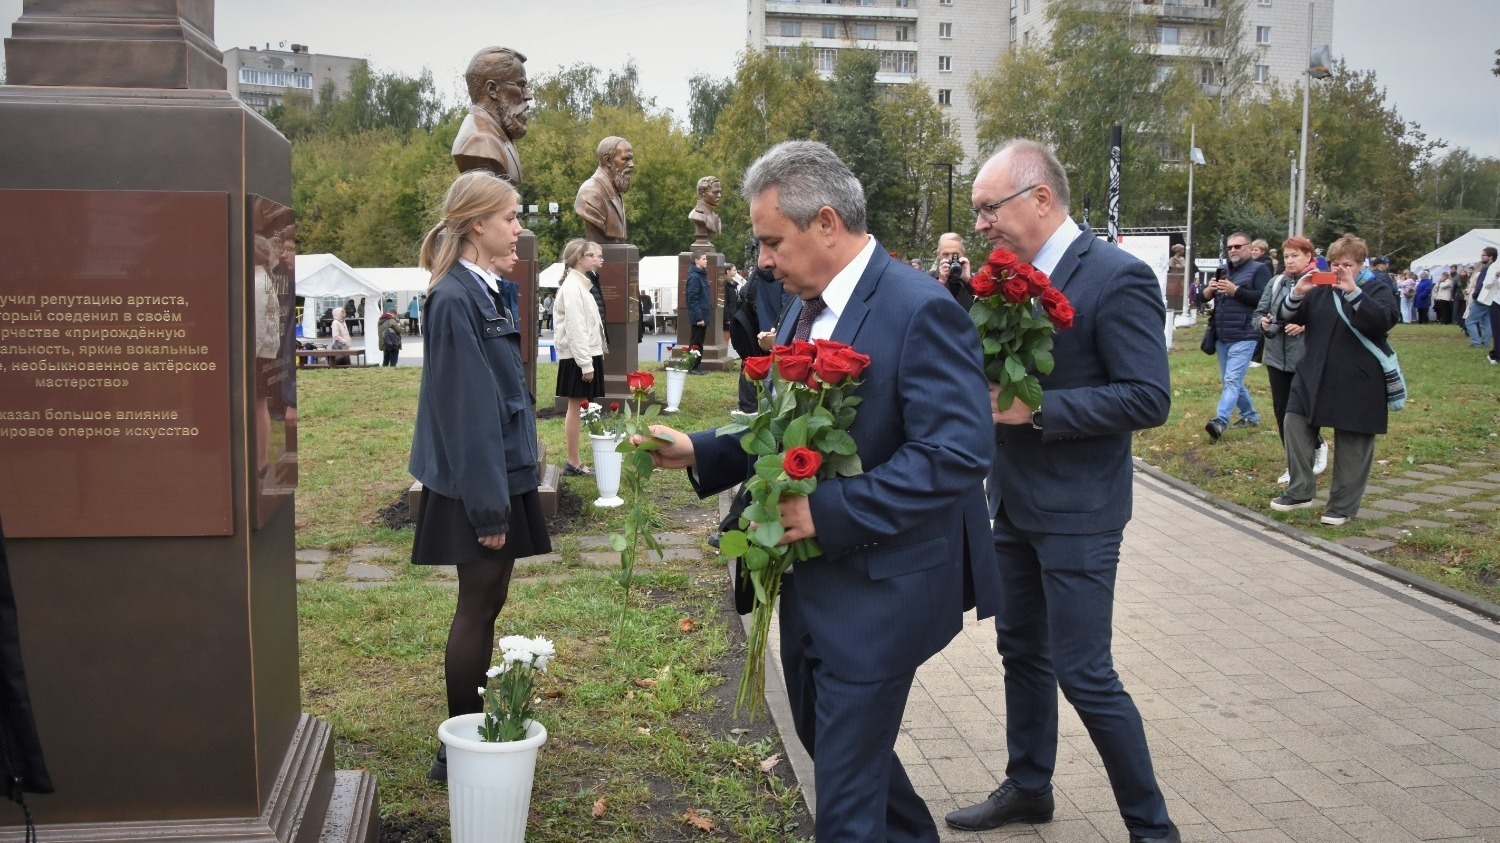 Сити-менеджер (в центре слева) Алексей Смирнов и мэр Костромы (справа) Юрий Журин возлагают цветы на открытии аллеи деятелей искусств.